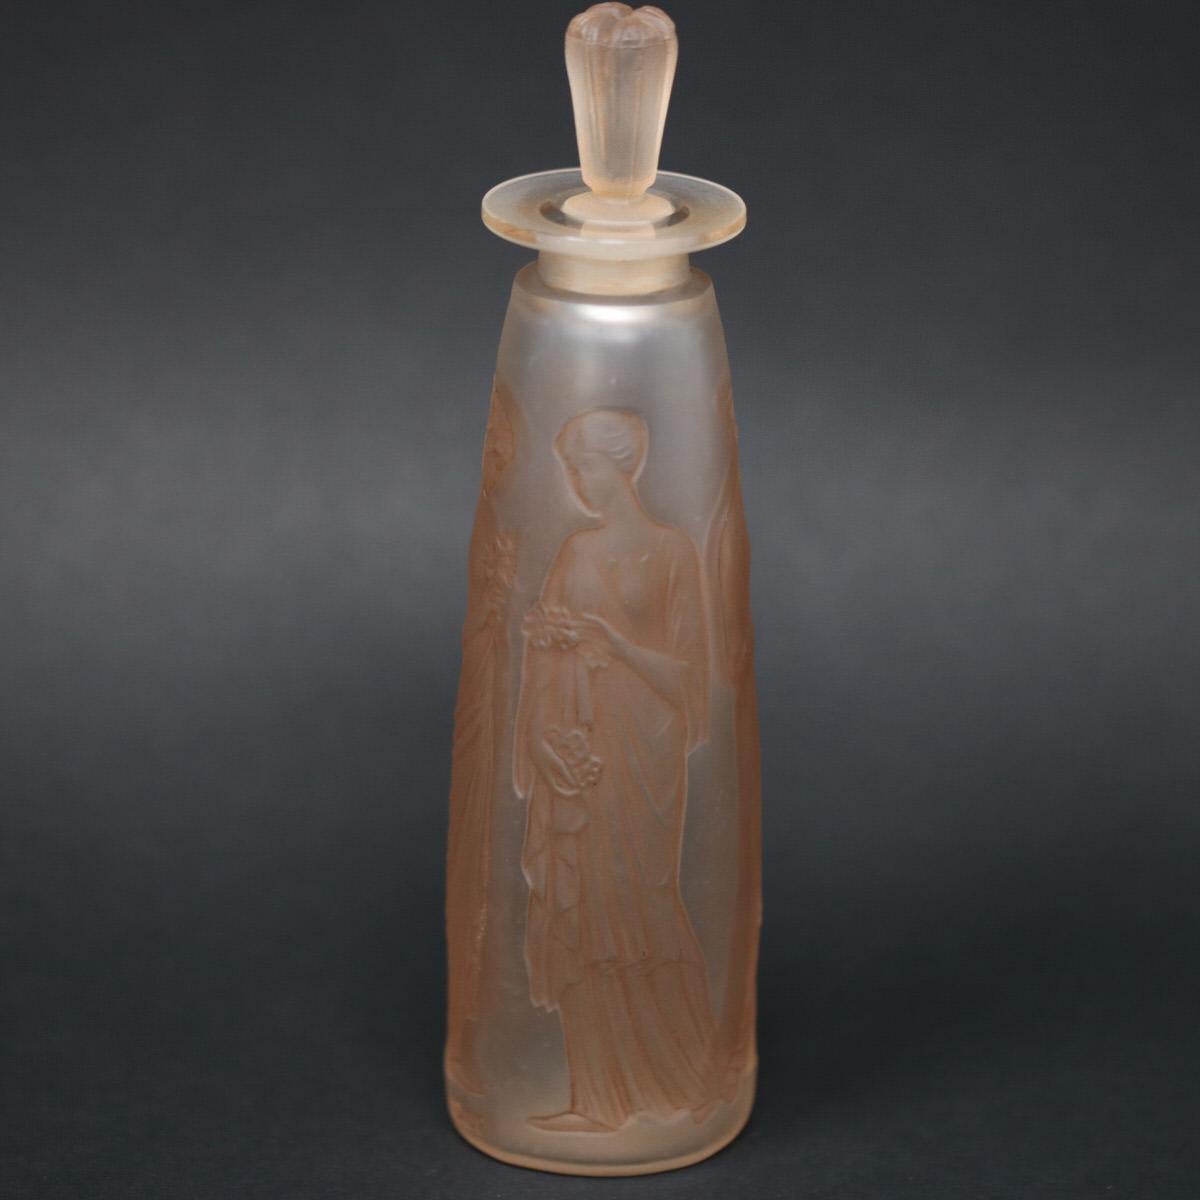 Art Nouveau René Lalique Ambre Antique Glass Perfume Bottle